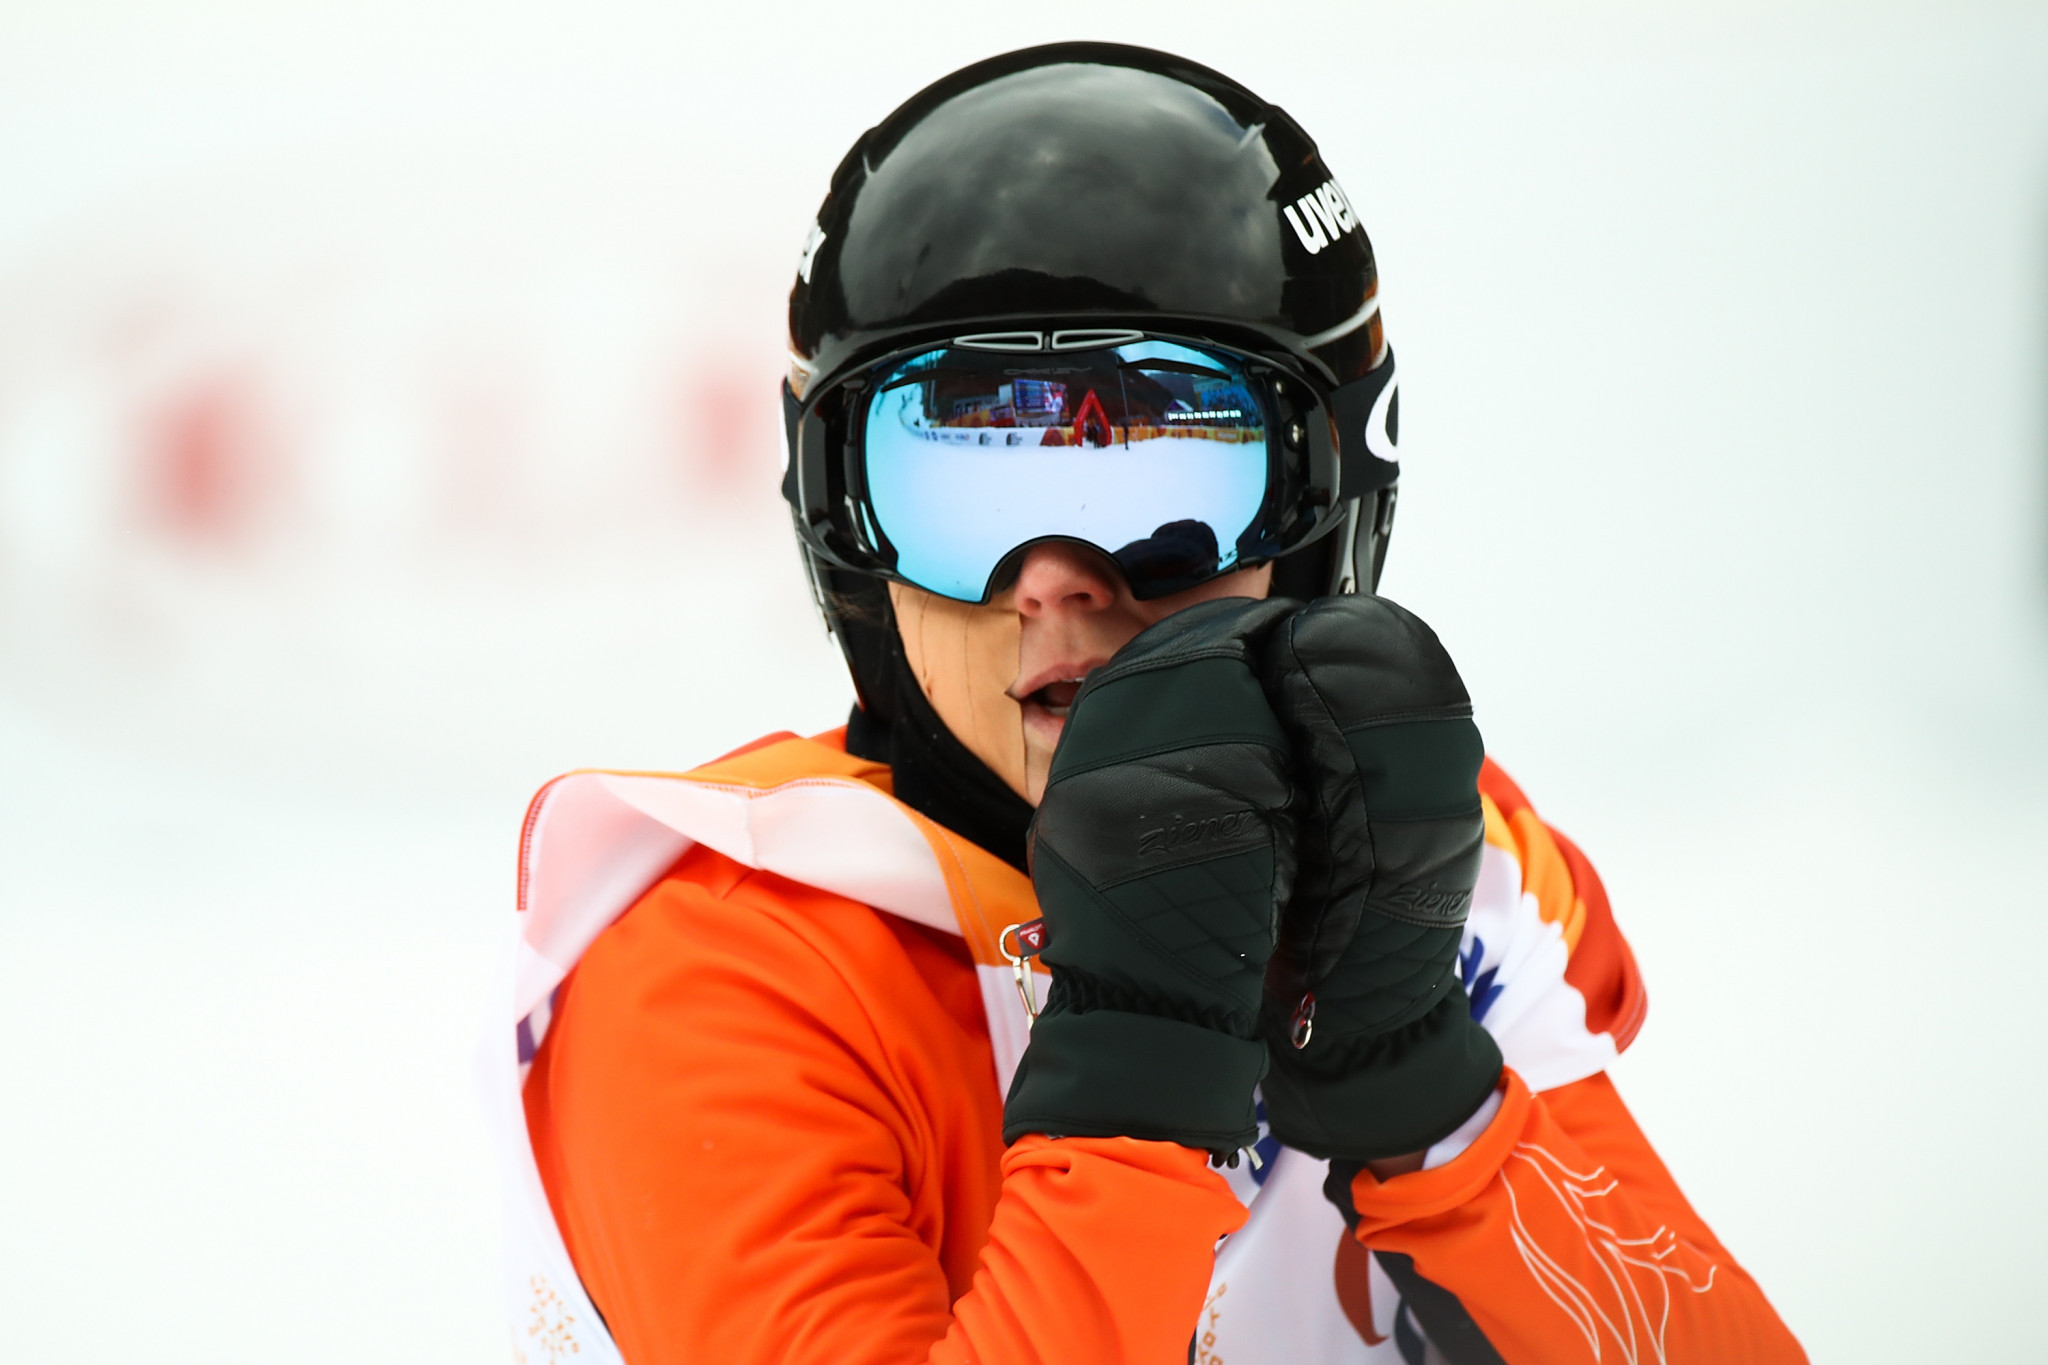 World champion Bunschoten wins on opening day of World Para Snowboard World Cup Finals in Klövsjö